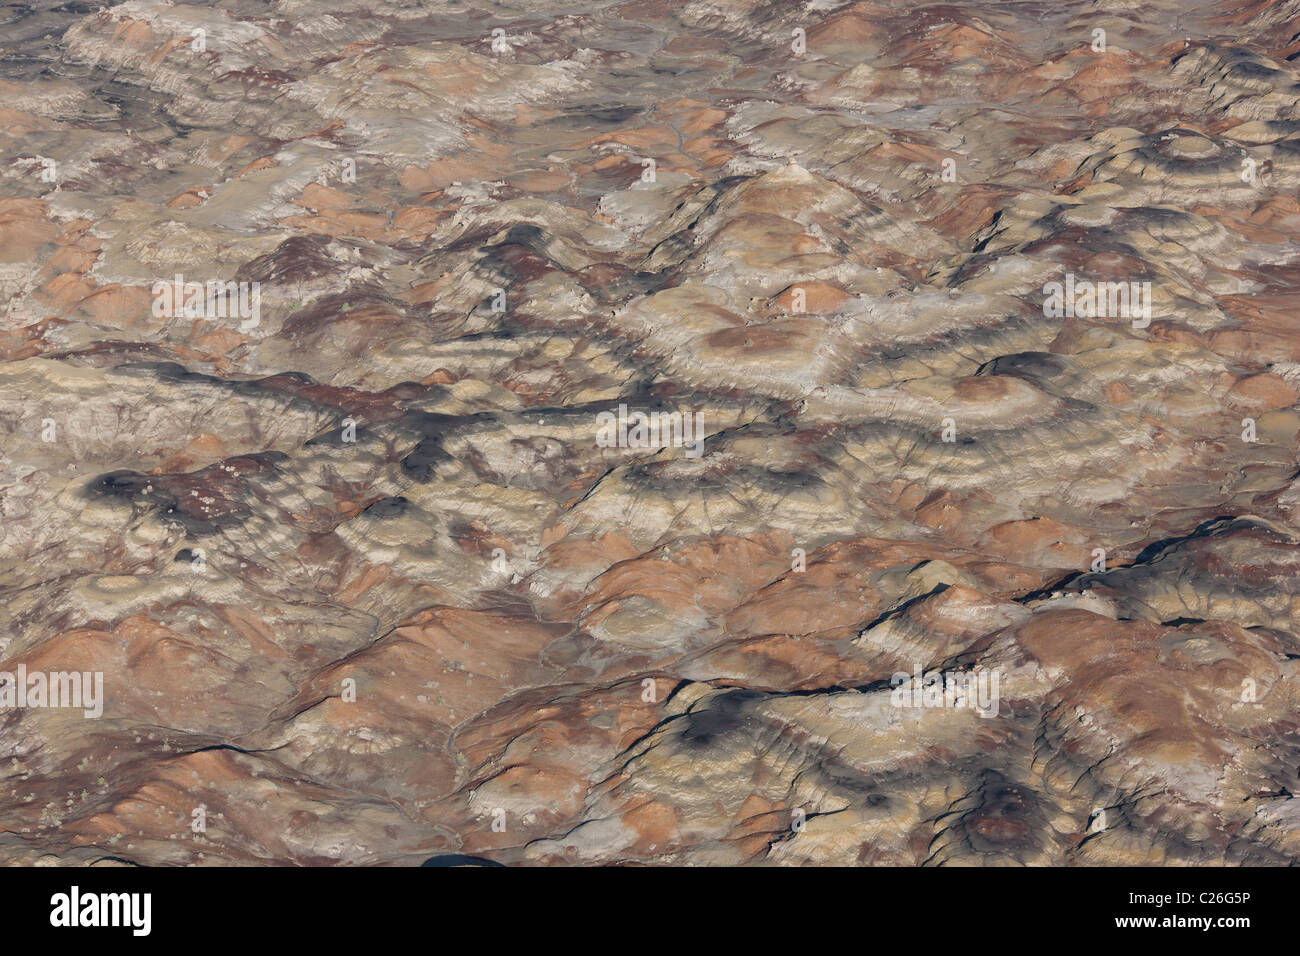 VISTA AÉREA. Badlands de rocas sedimentarias coloridas y de forma extraña hoodoos. Bisti De-Na-Zin Wilderness Area, Condado de San Juan, Nuevo México, Estados Unidos. Foto de stock